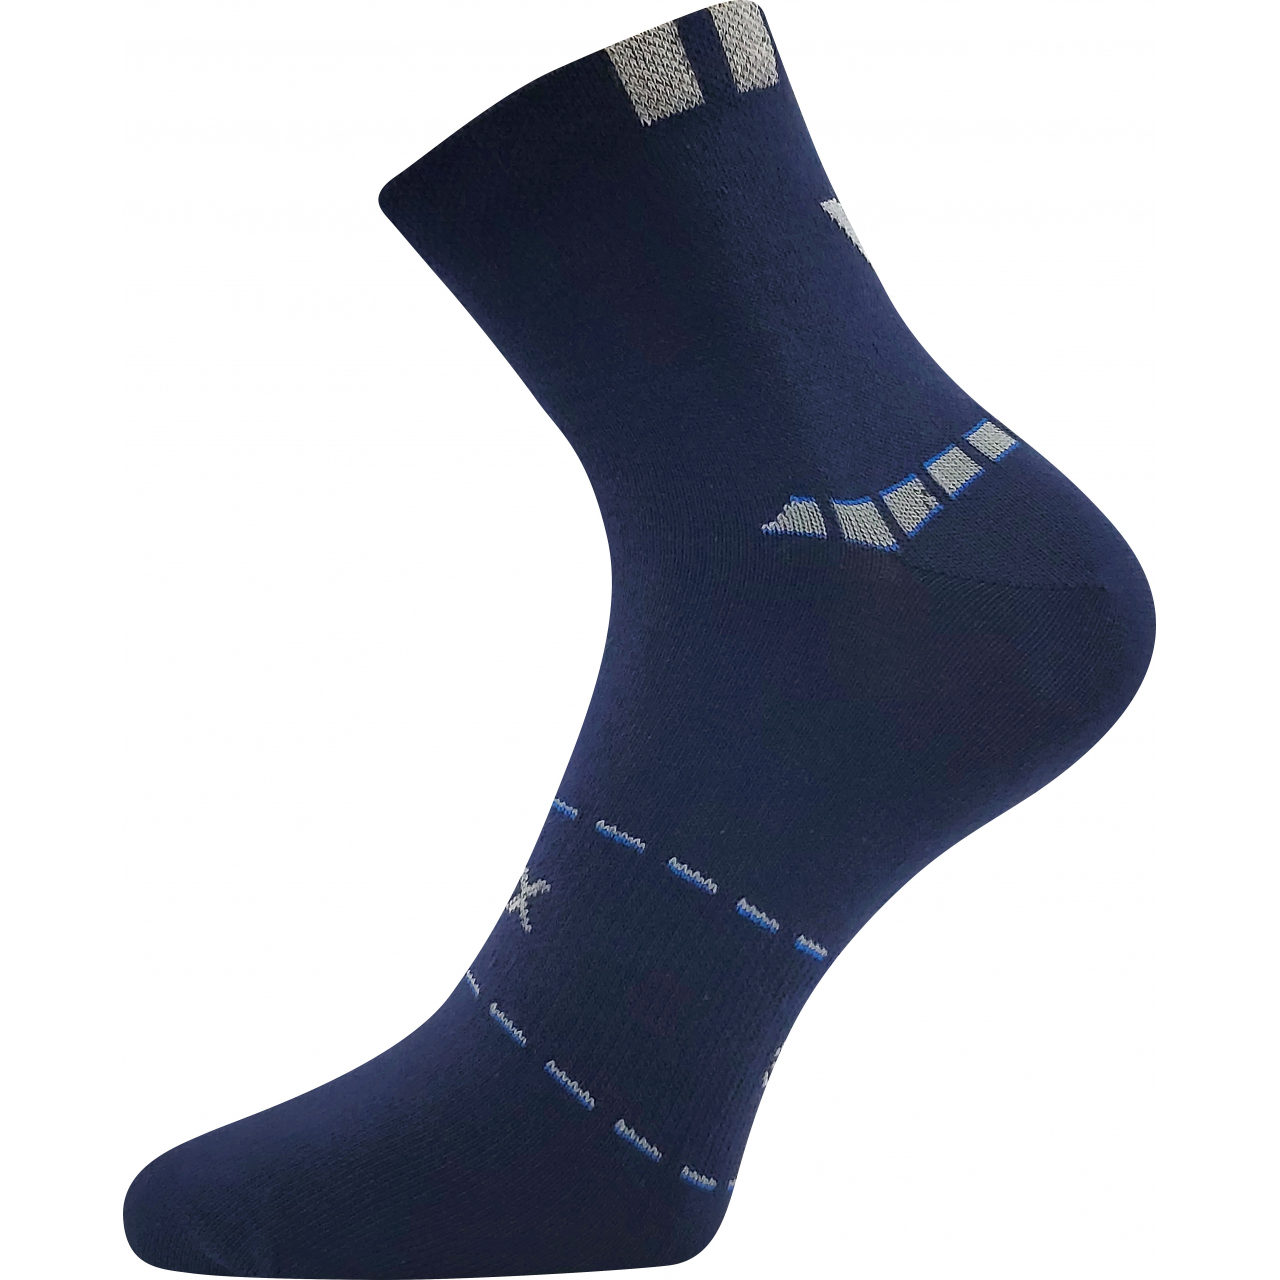 Ponožky pánské sportovní Voxx Rexon 02 - tmavě modré, 39-42